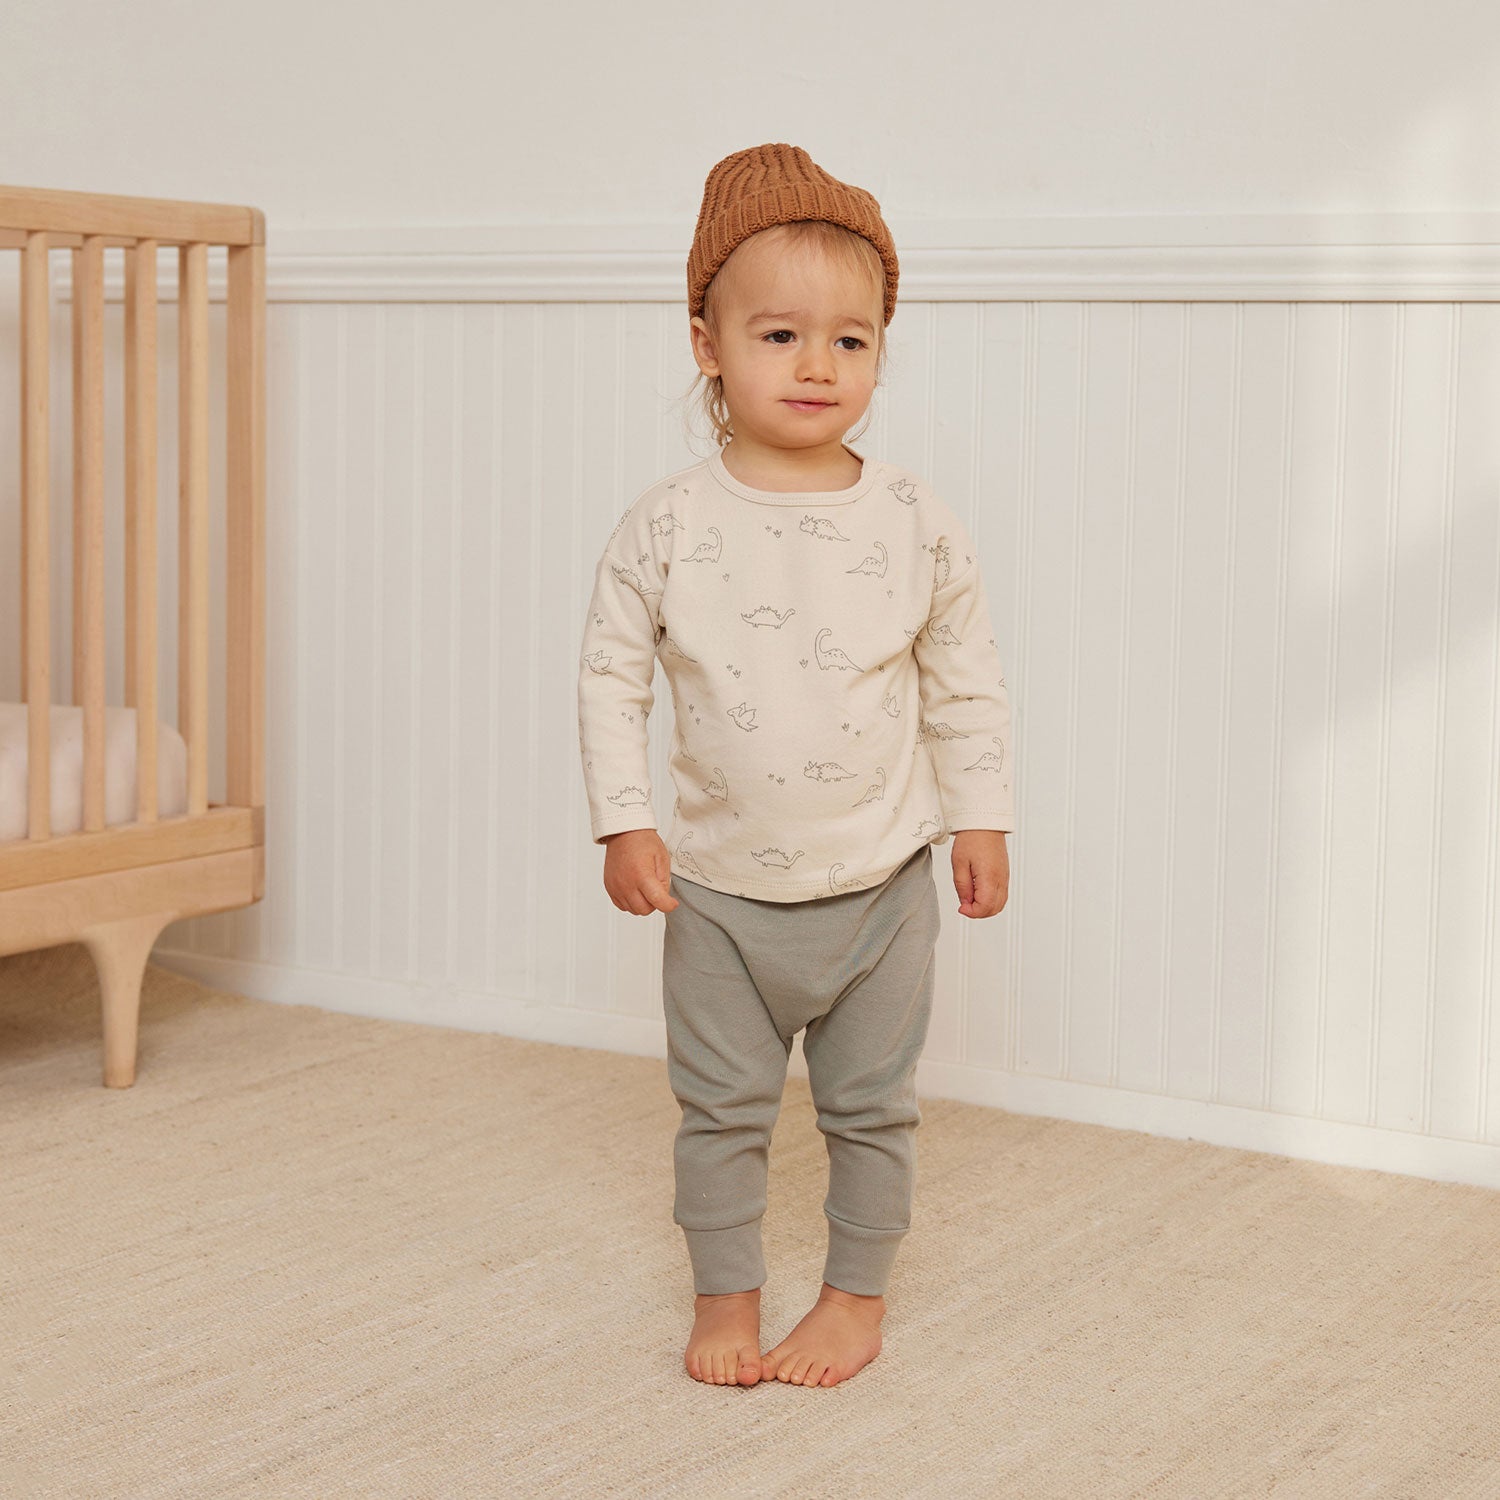 Toddler wearing Quincy Mae Drawstring Pant - Basil